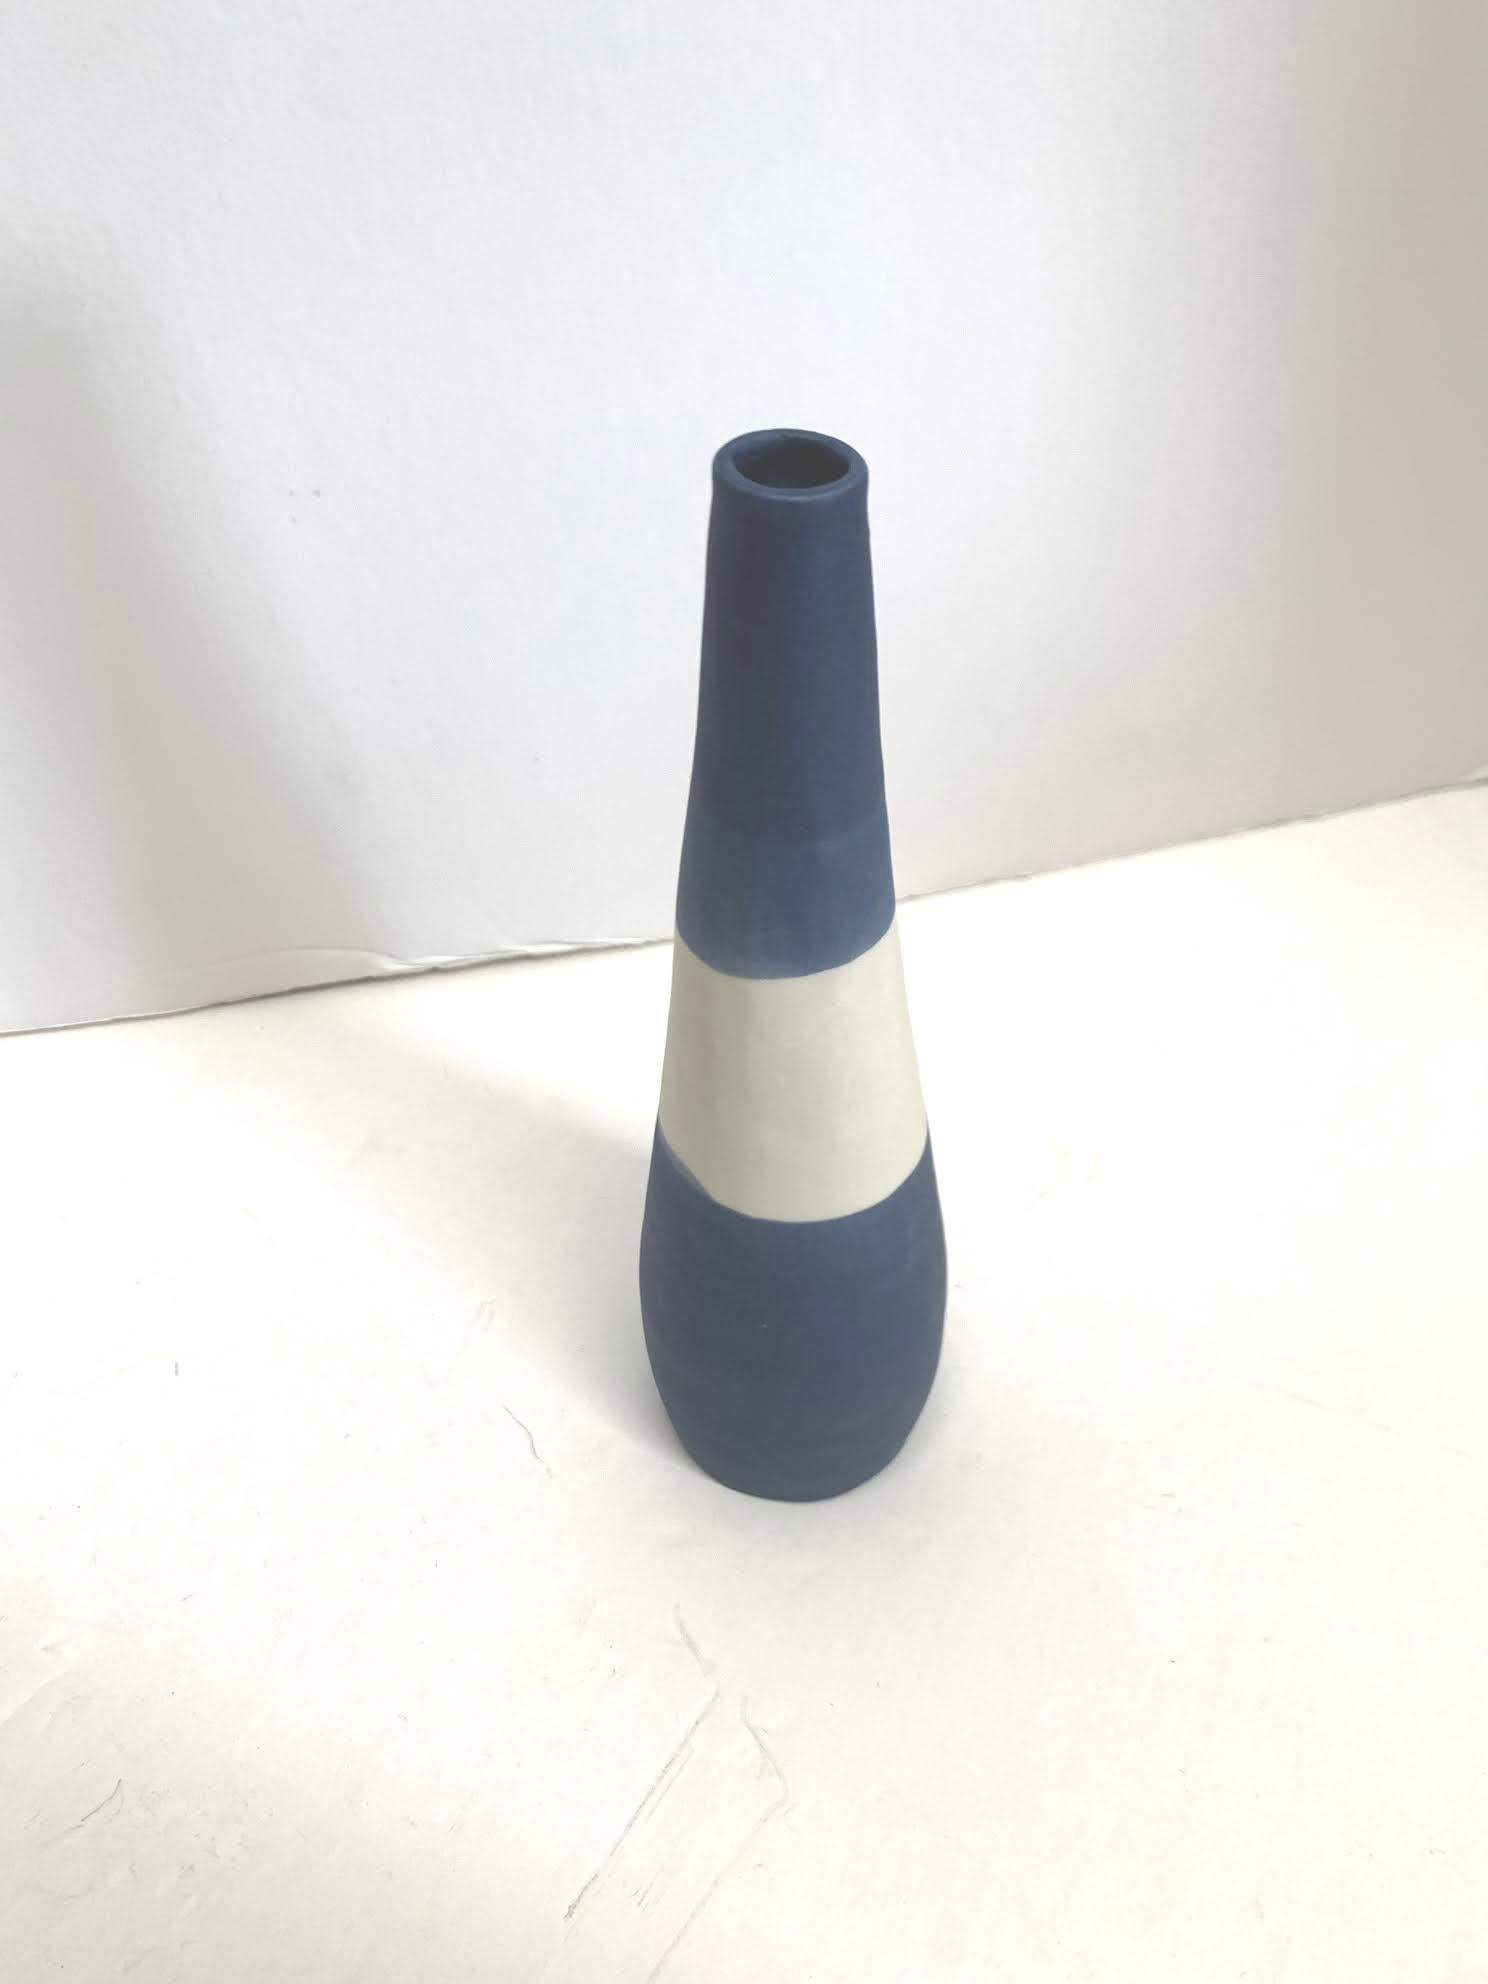 Zeitgenössische italienische handgefertigte Keramik blau geschliffene dünne Vase mit weißem Farbblock-Design.
Matte Glasur.
